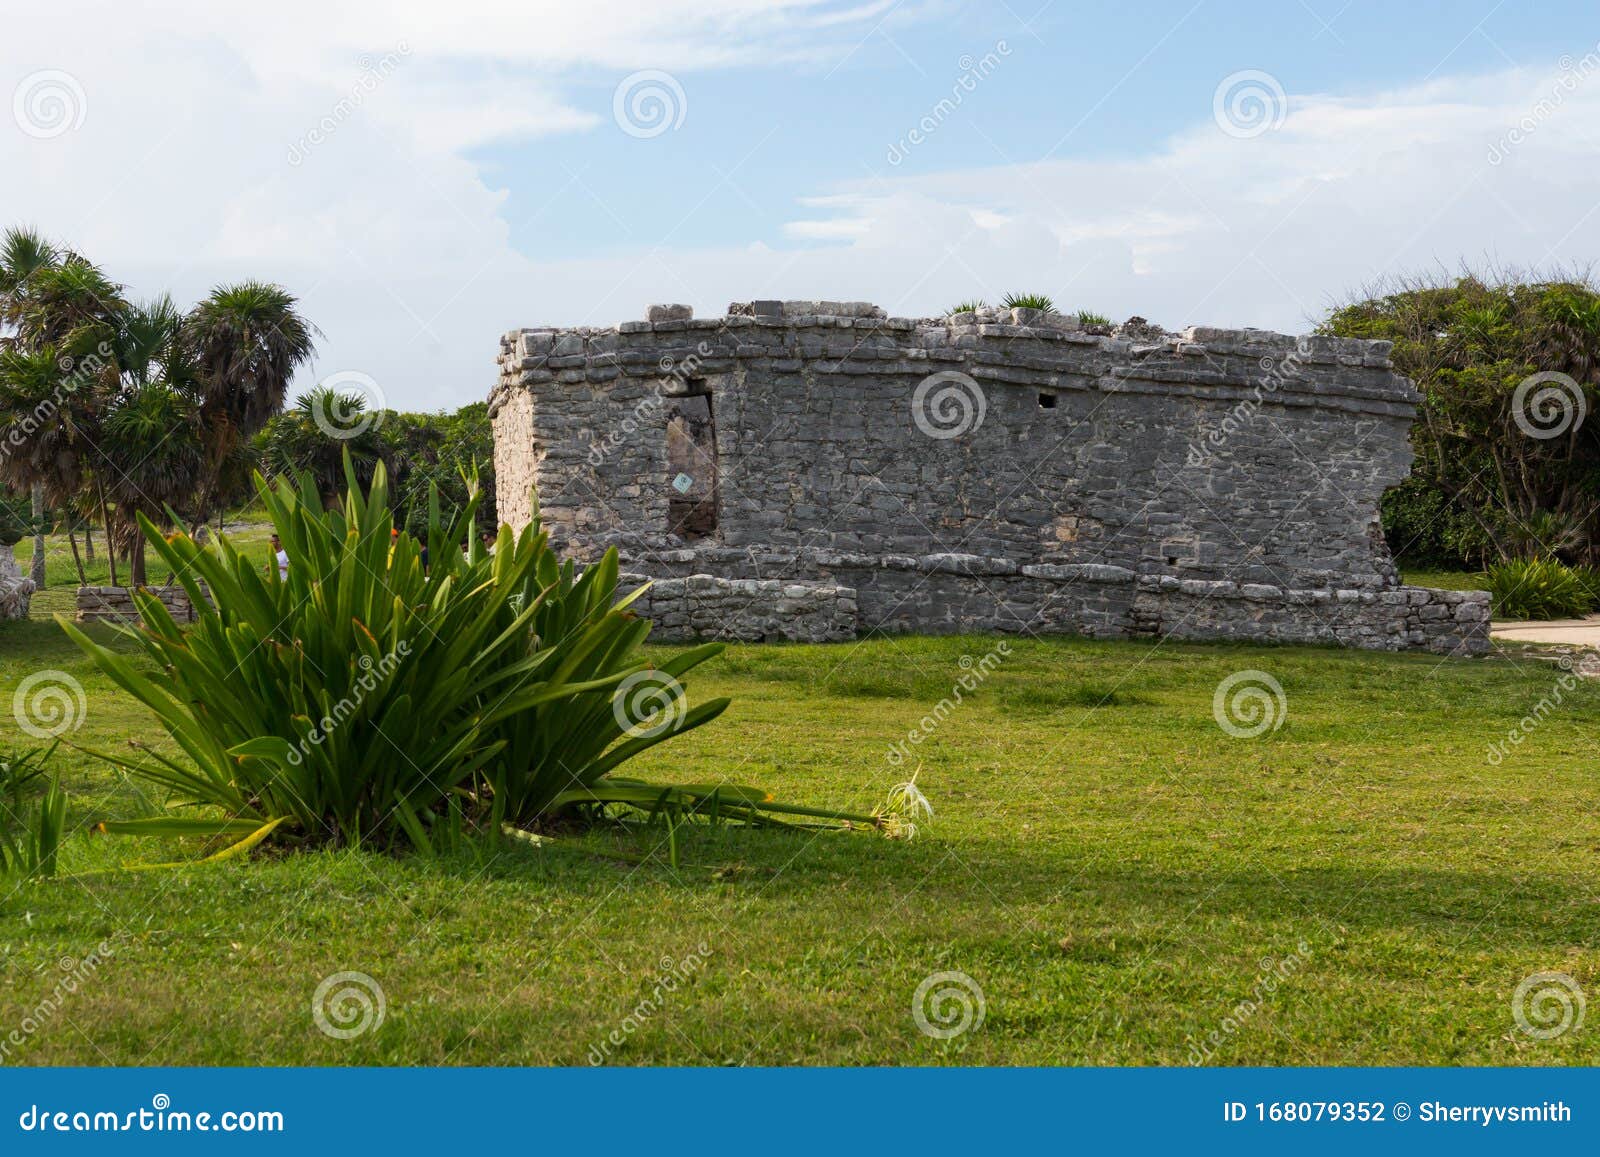 mayan ruins of the casa del noroeste